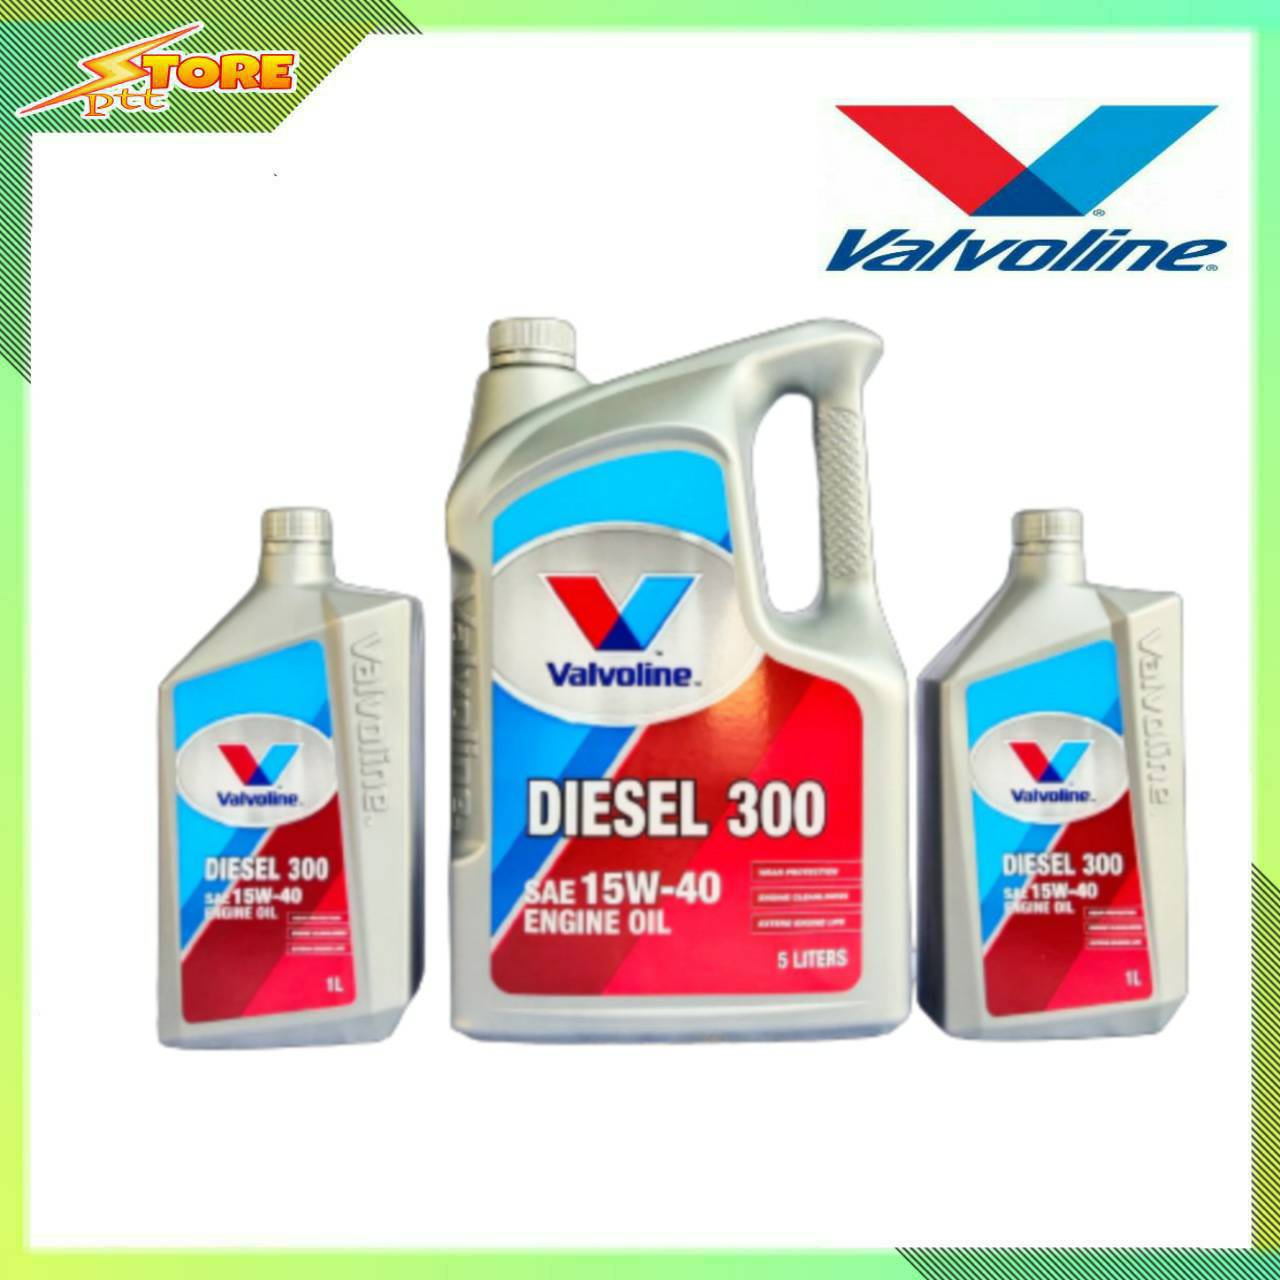 น้ำมันเครื่อง Valvoline Diesel 300 15W-40 ขนาด 5+2ลิตร กึ่งสังเคราะห์ ( วาโวลีน ดีเซล 300 15w-40 )